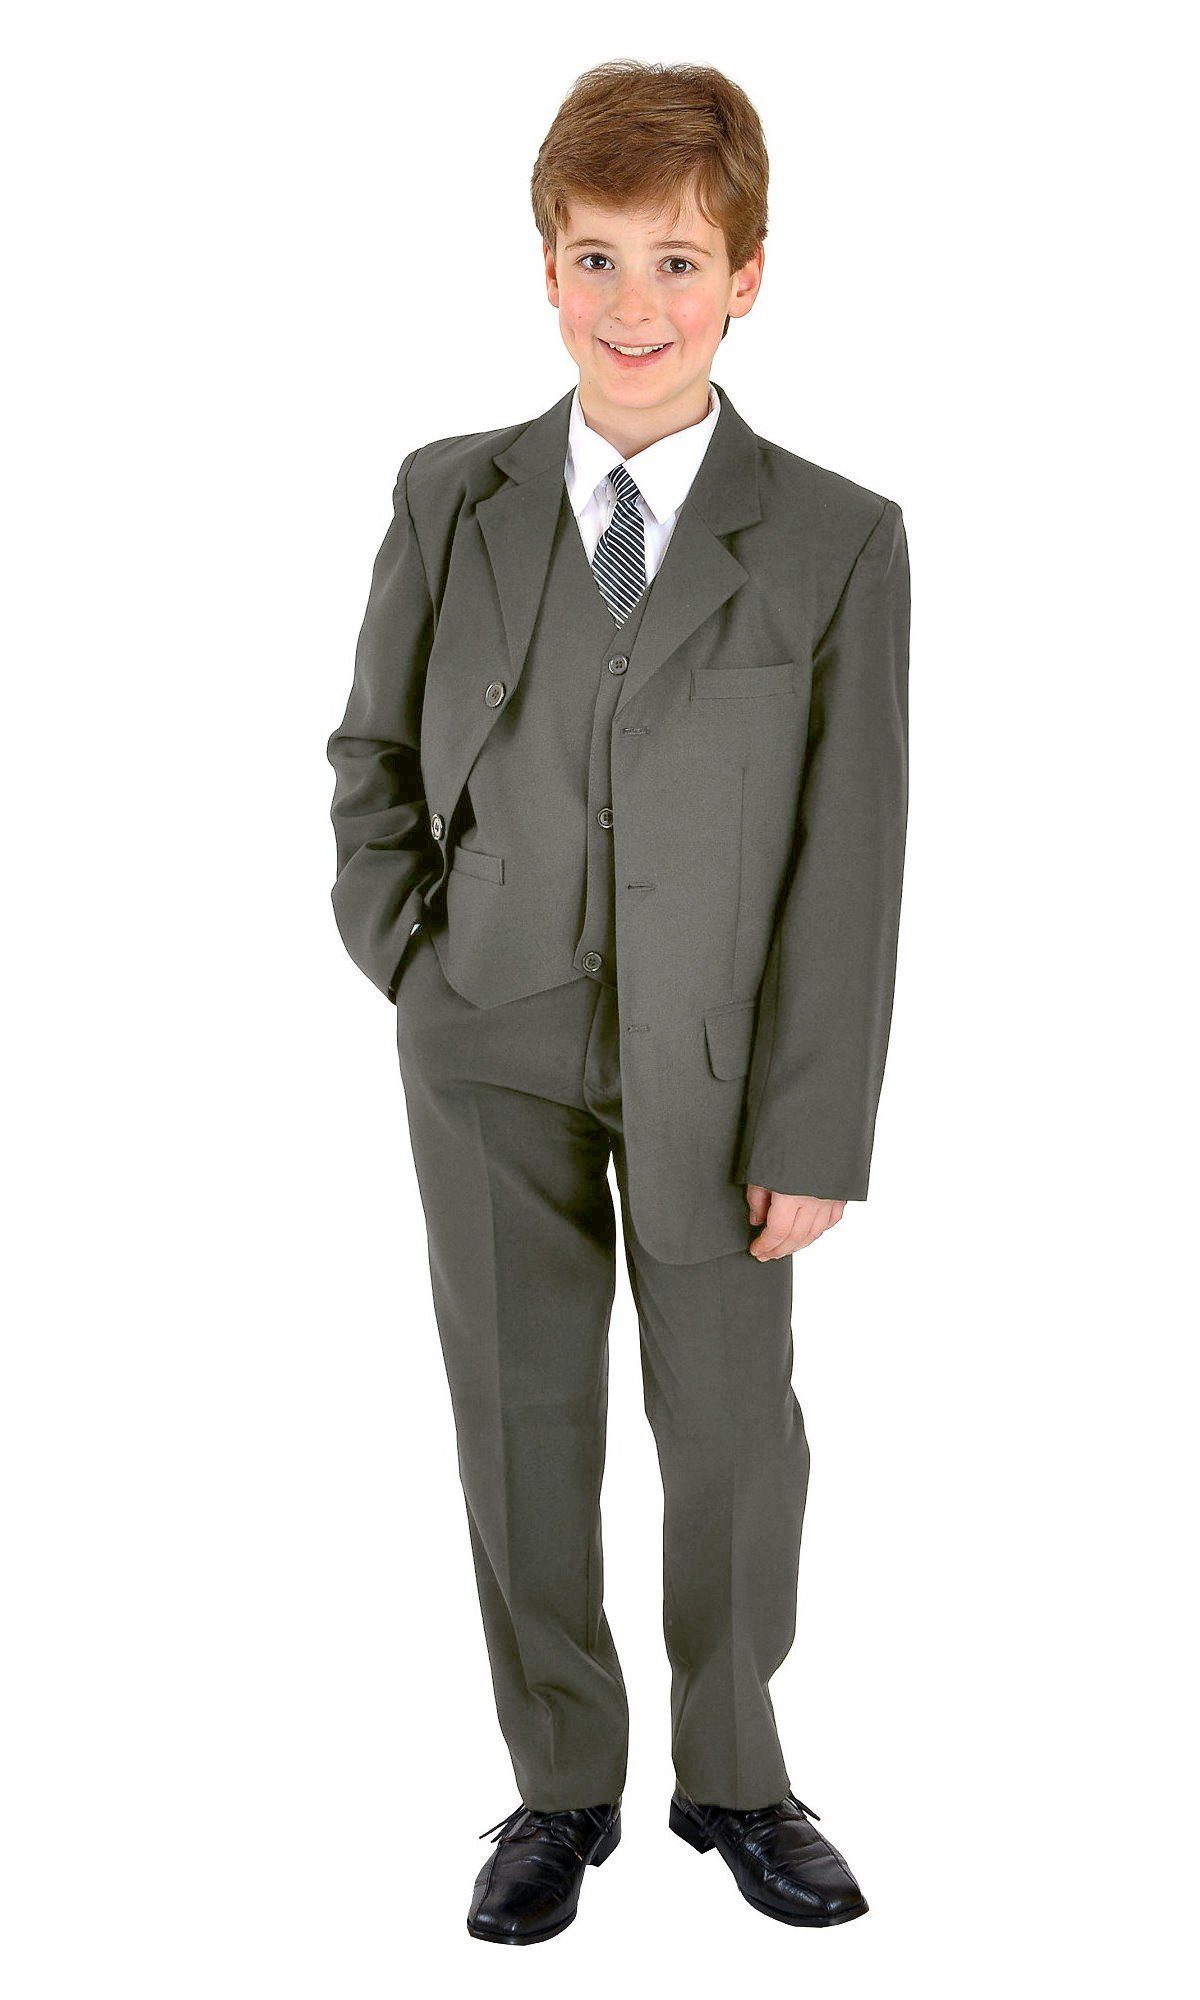 Family Trends Anzug Kombination Set 5 Teilig Sakko Hemd Krawatte Weste Hose,  Bestens geeignet für Hochzeiten, Kommunion und Konfirmation